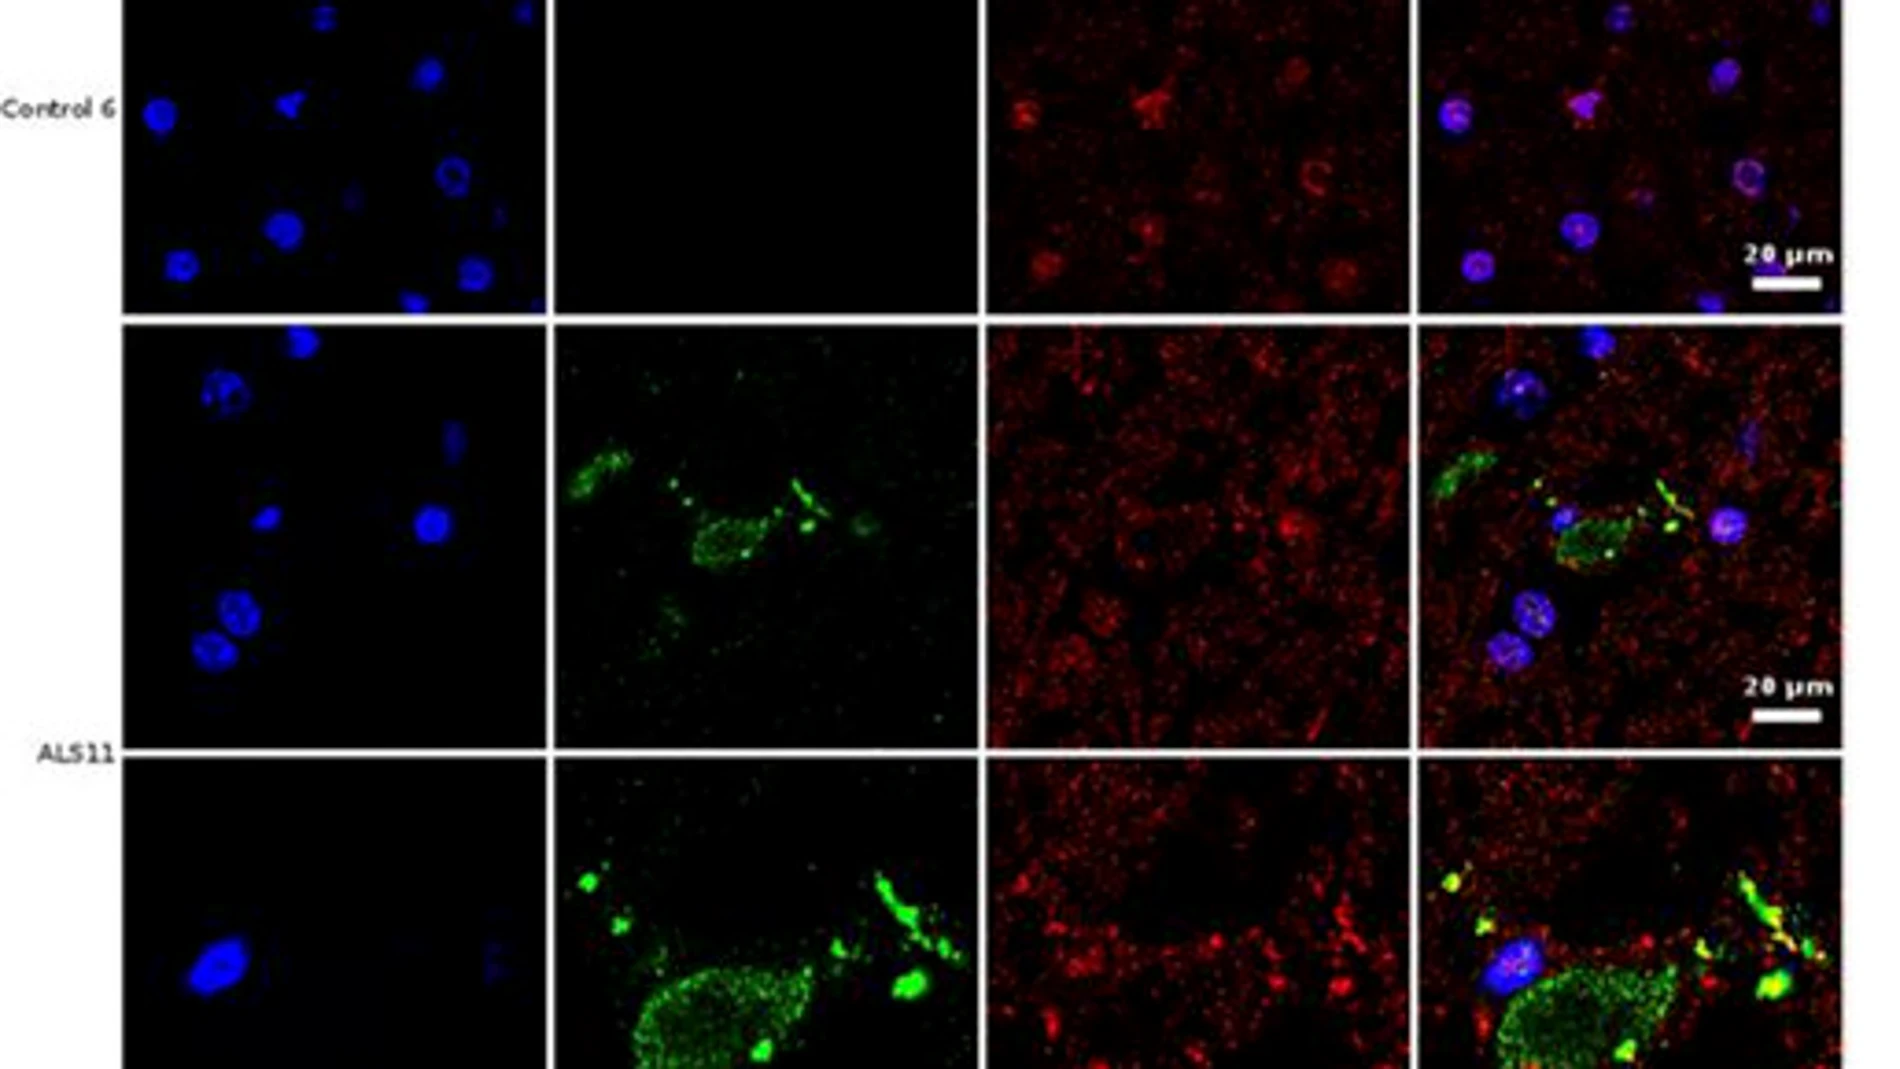 Análisis de inmunohistoquímica de secciones cerebrales de la corteza frontal de una persona control y de un paciente diagnosticado de ELA (ALS11). El núcleo de las células se tiñó con DAPI (azul), mientras que las células de hongo se detectaron con un anticuerpo específico (verde) y la tubulina celular se muestra en rojo